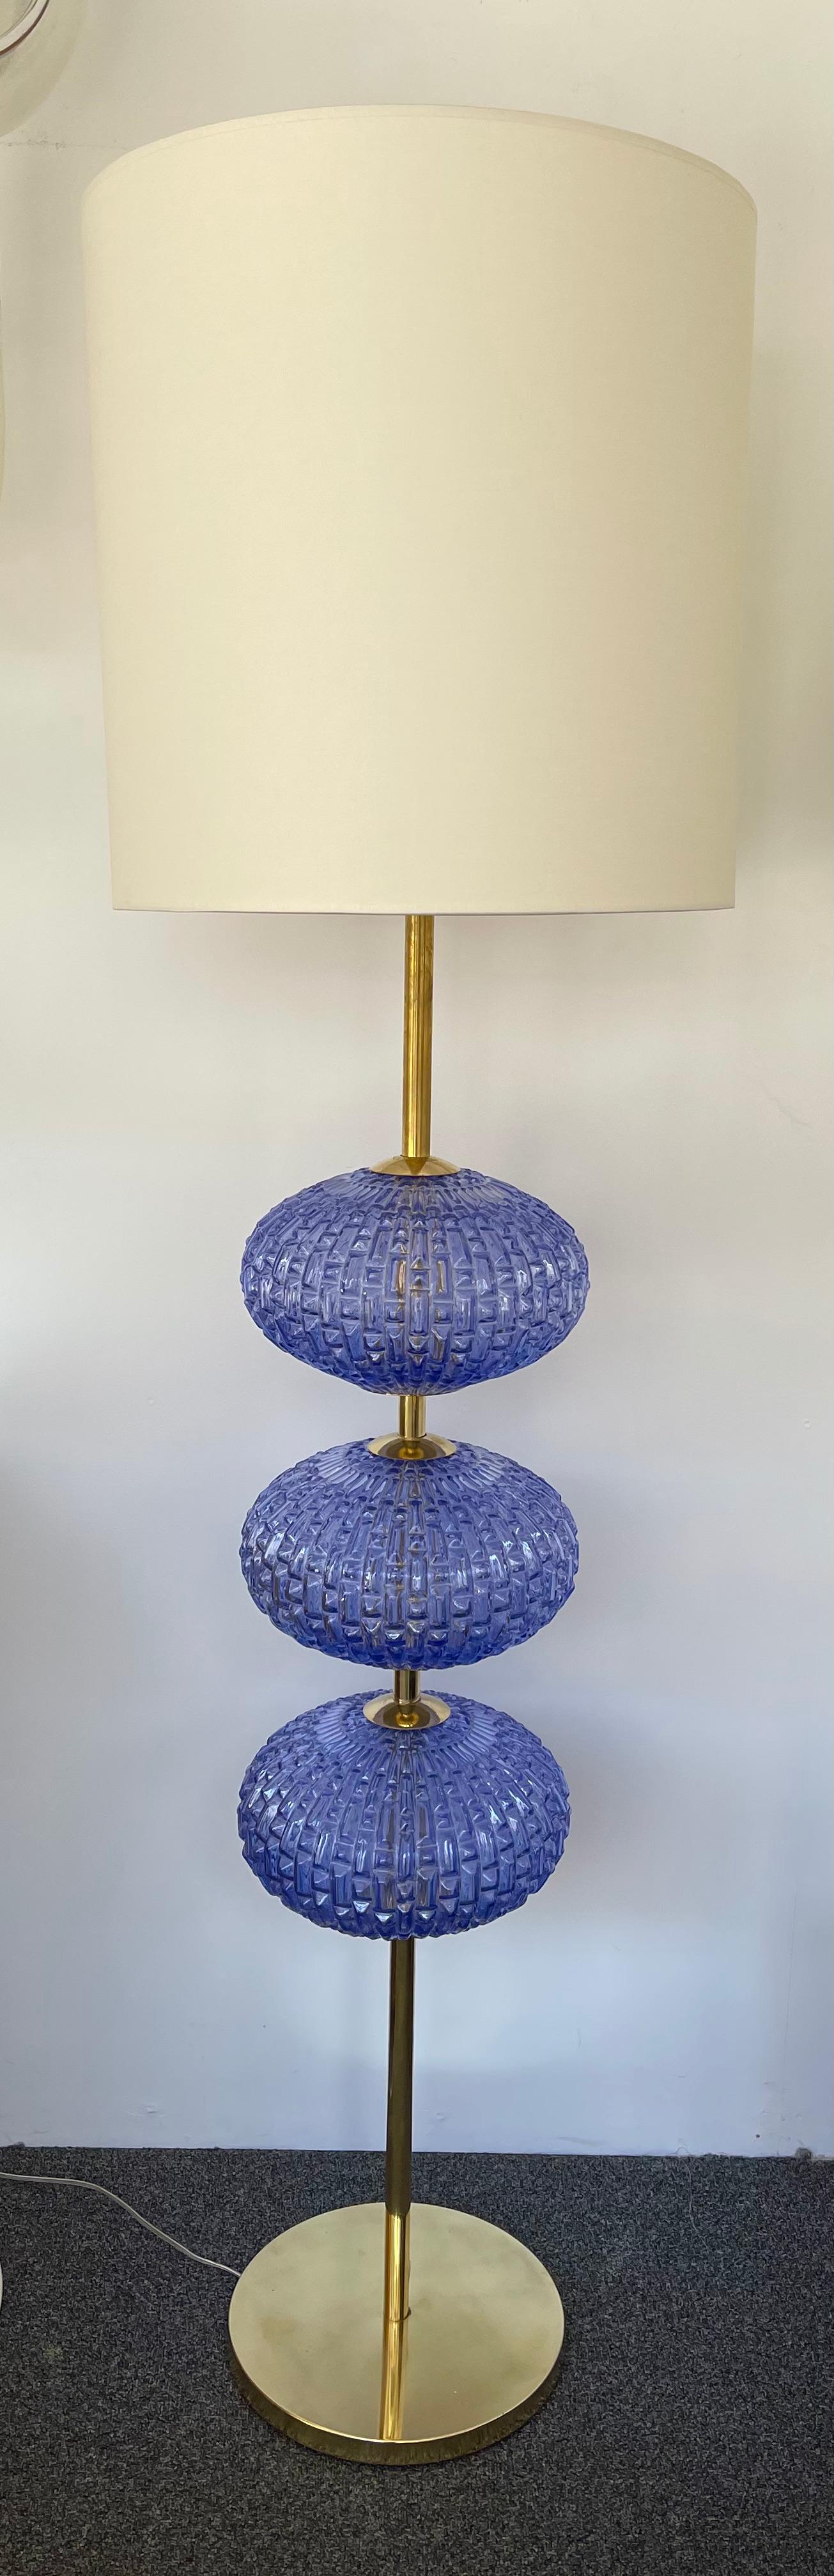 blue glass floor lamp